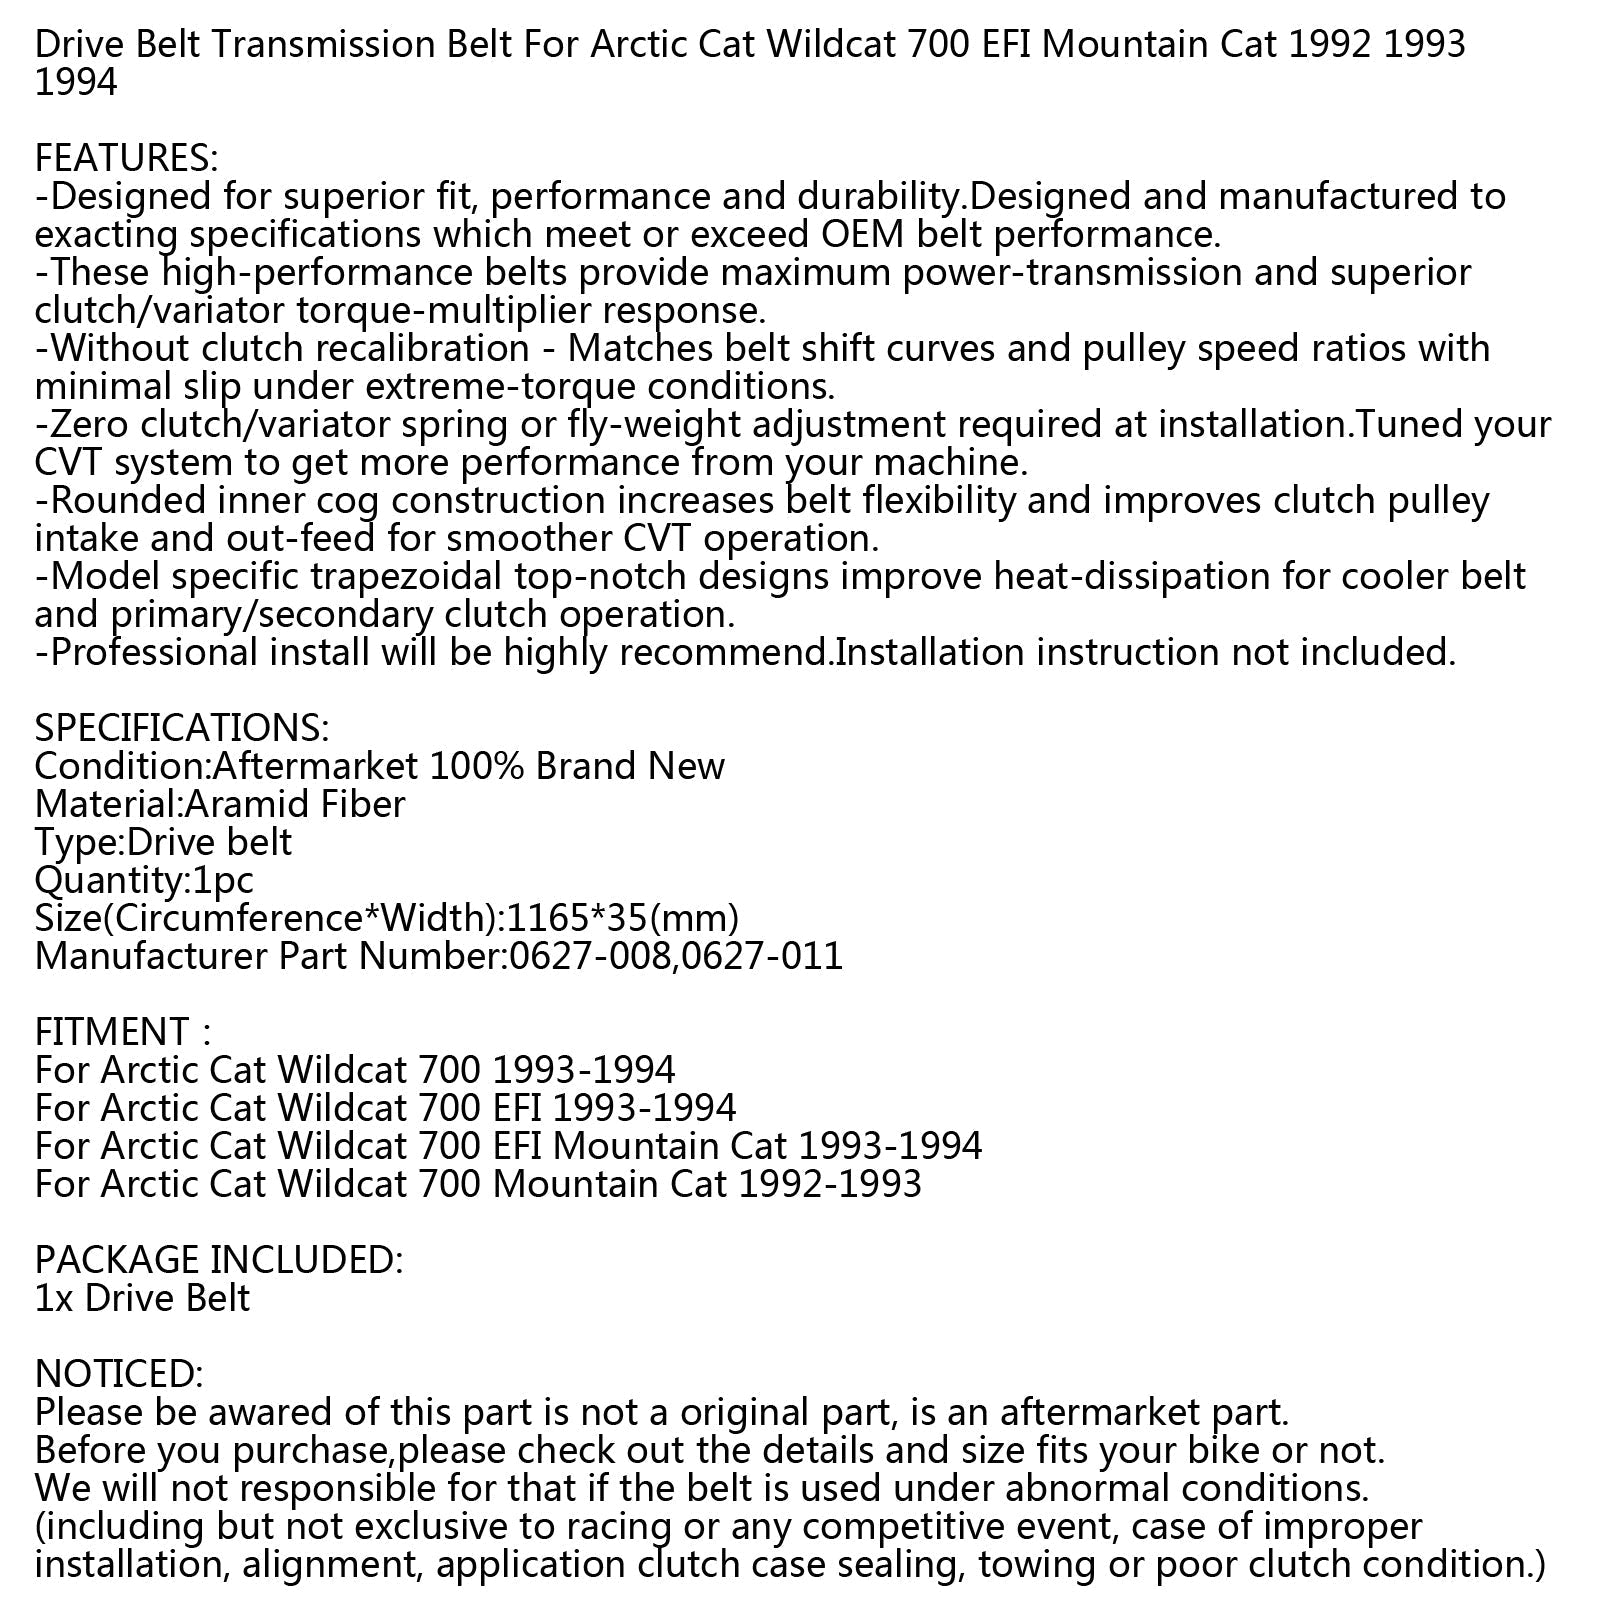 Cinghia di trasmissione per Arctic Cat 0627-008 0627-011 Motoslitta Wildcat 700 EFI 92-94 Generico